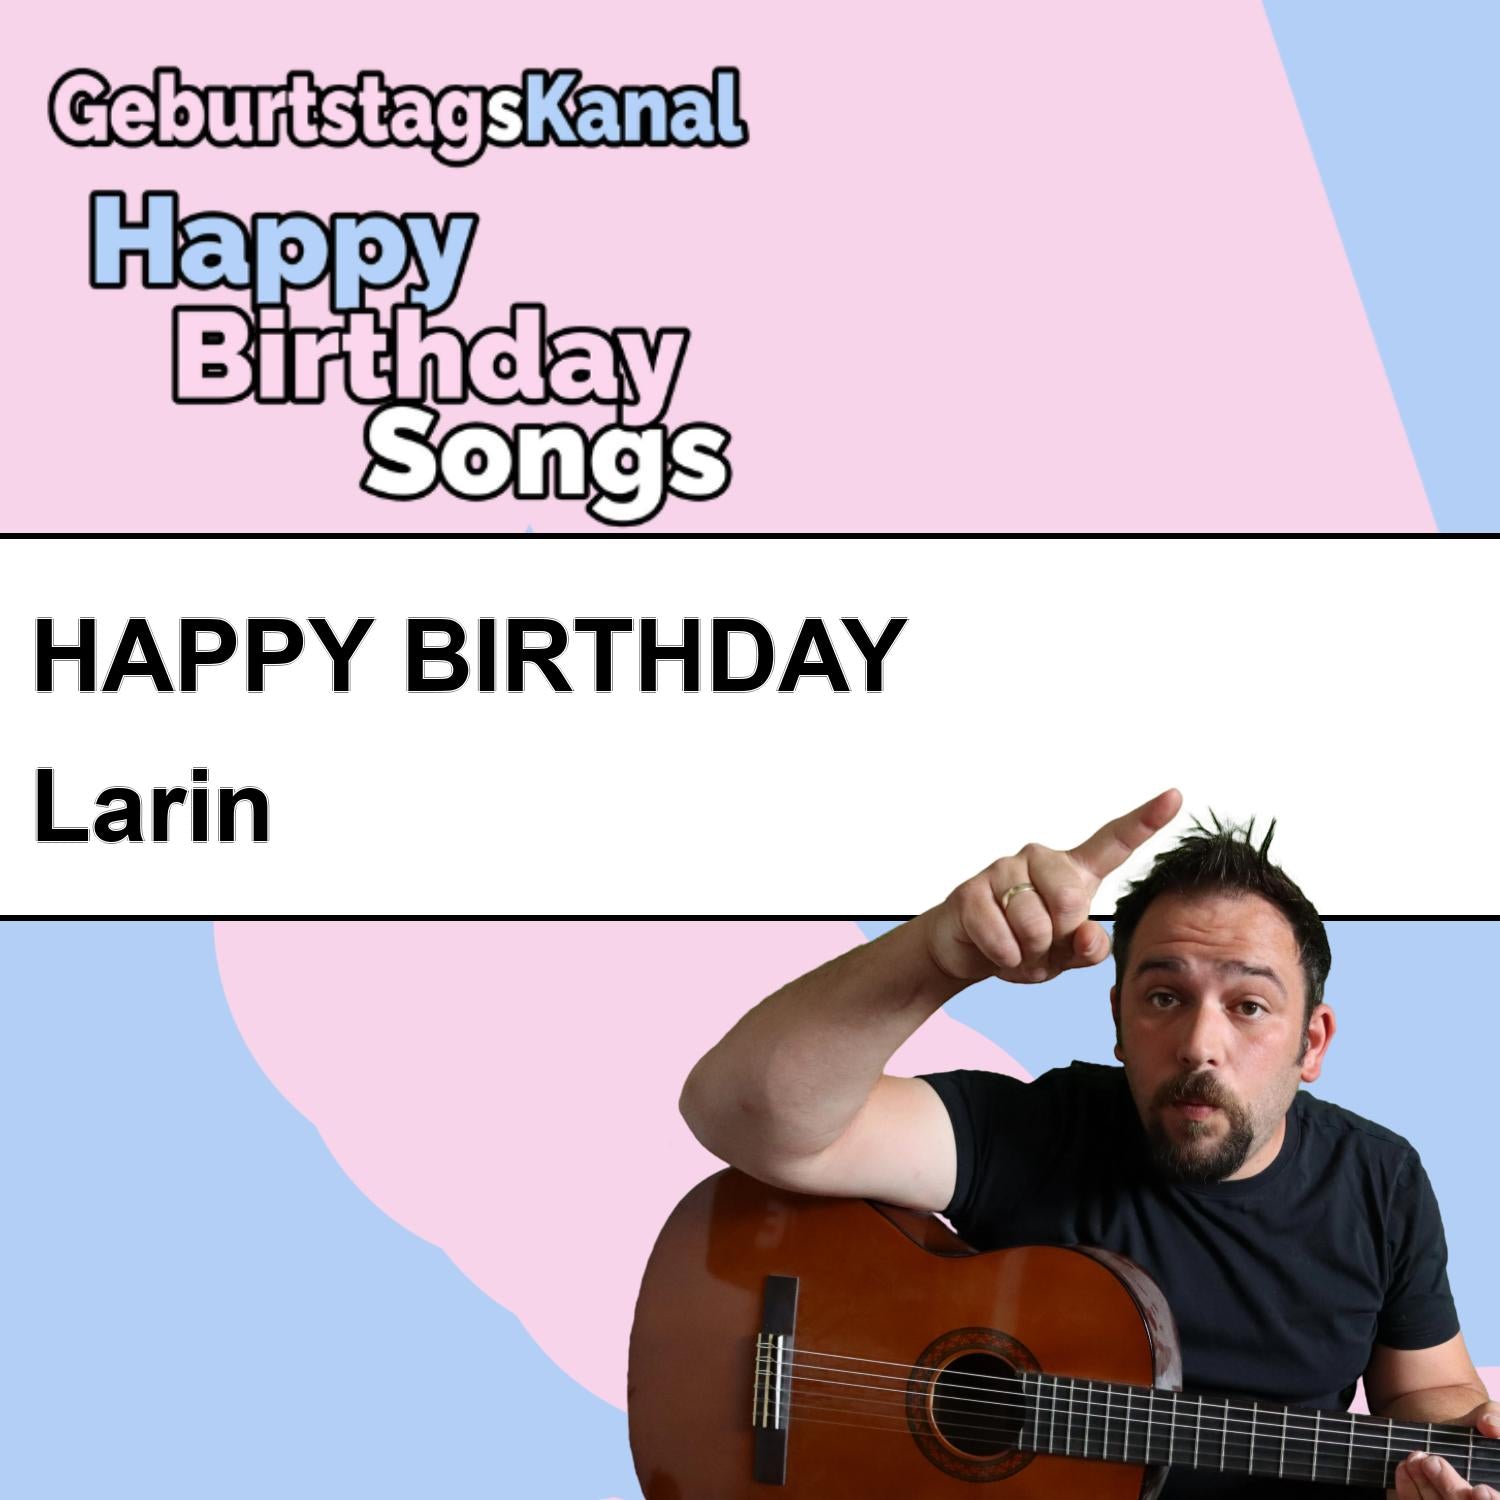 Produktbild Happy Birthday to you Larin mit Wunschgrußbotschaft